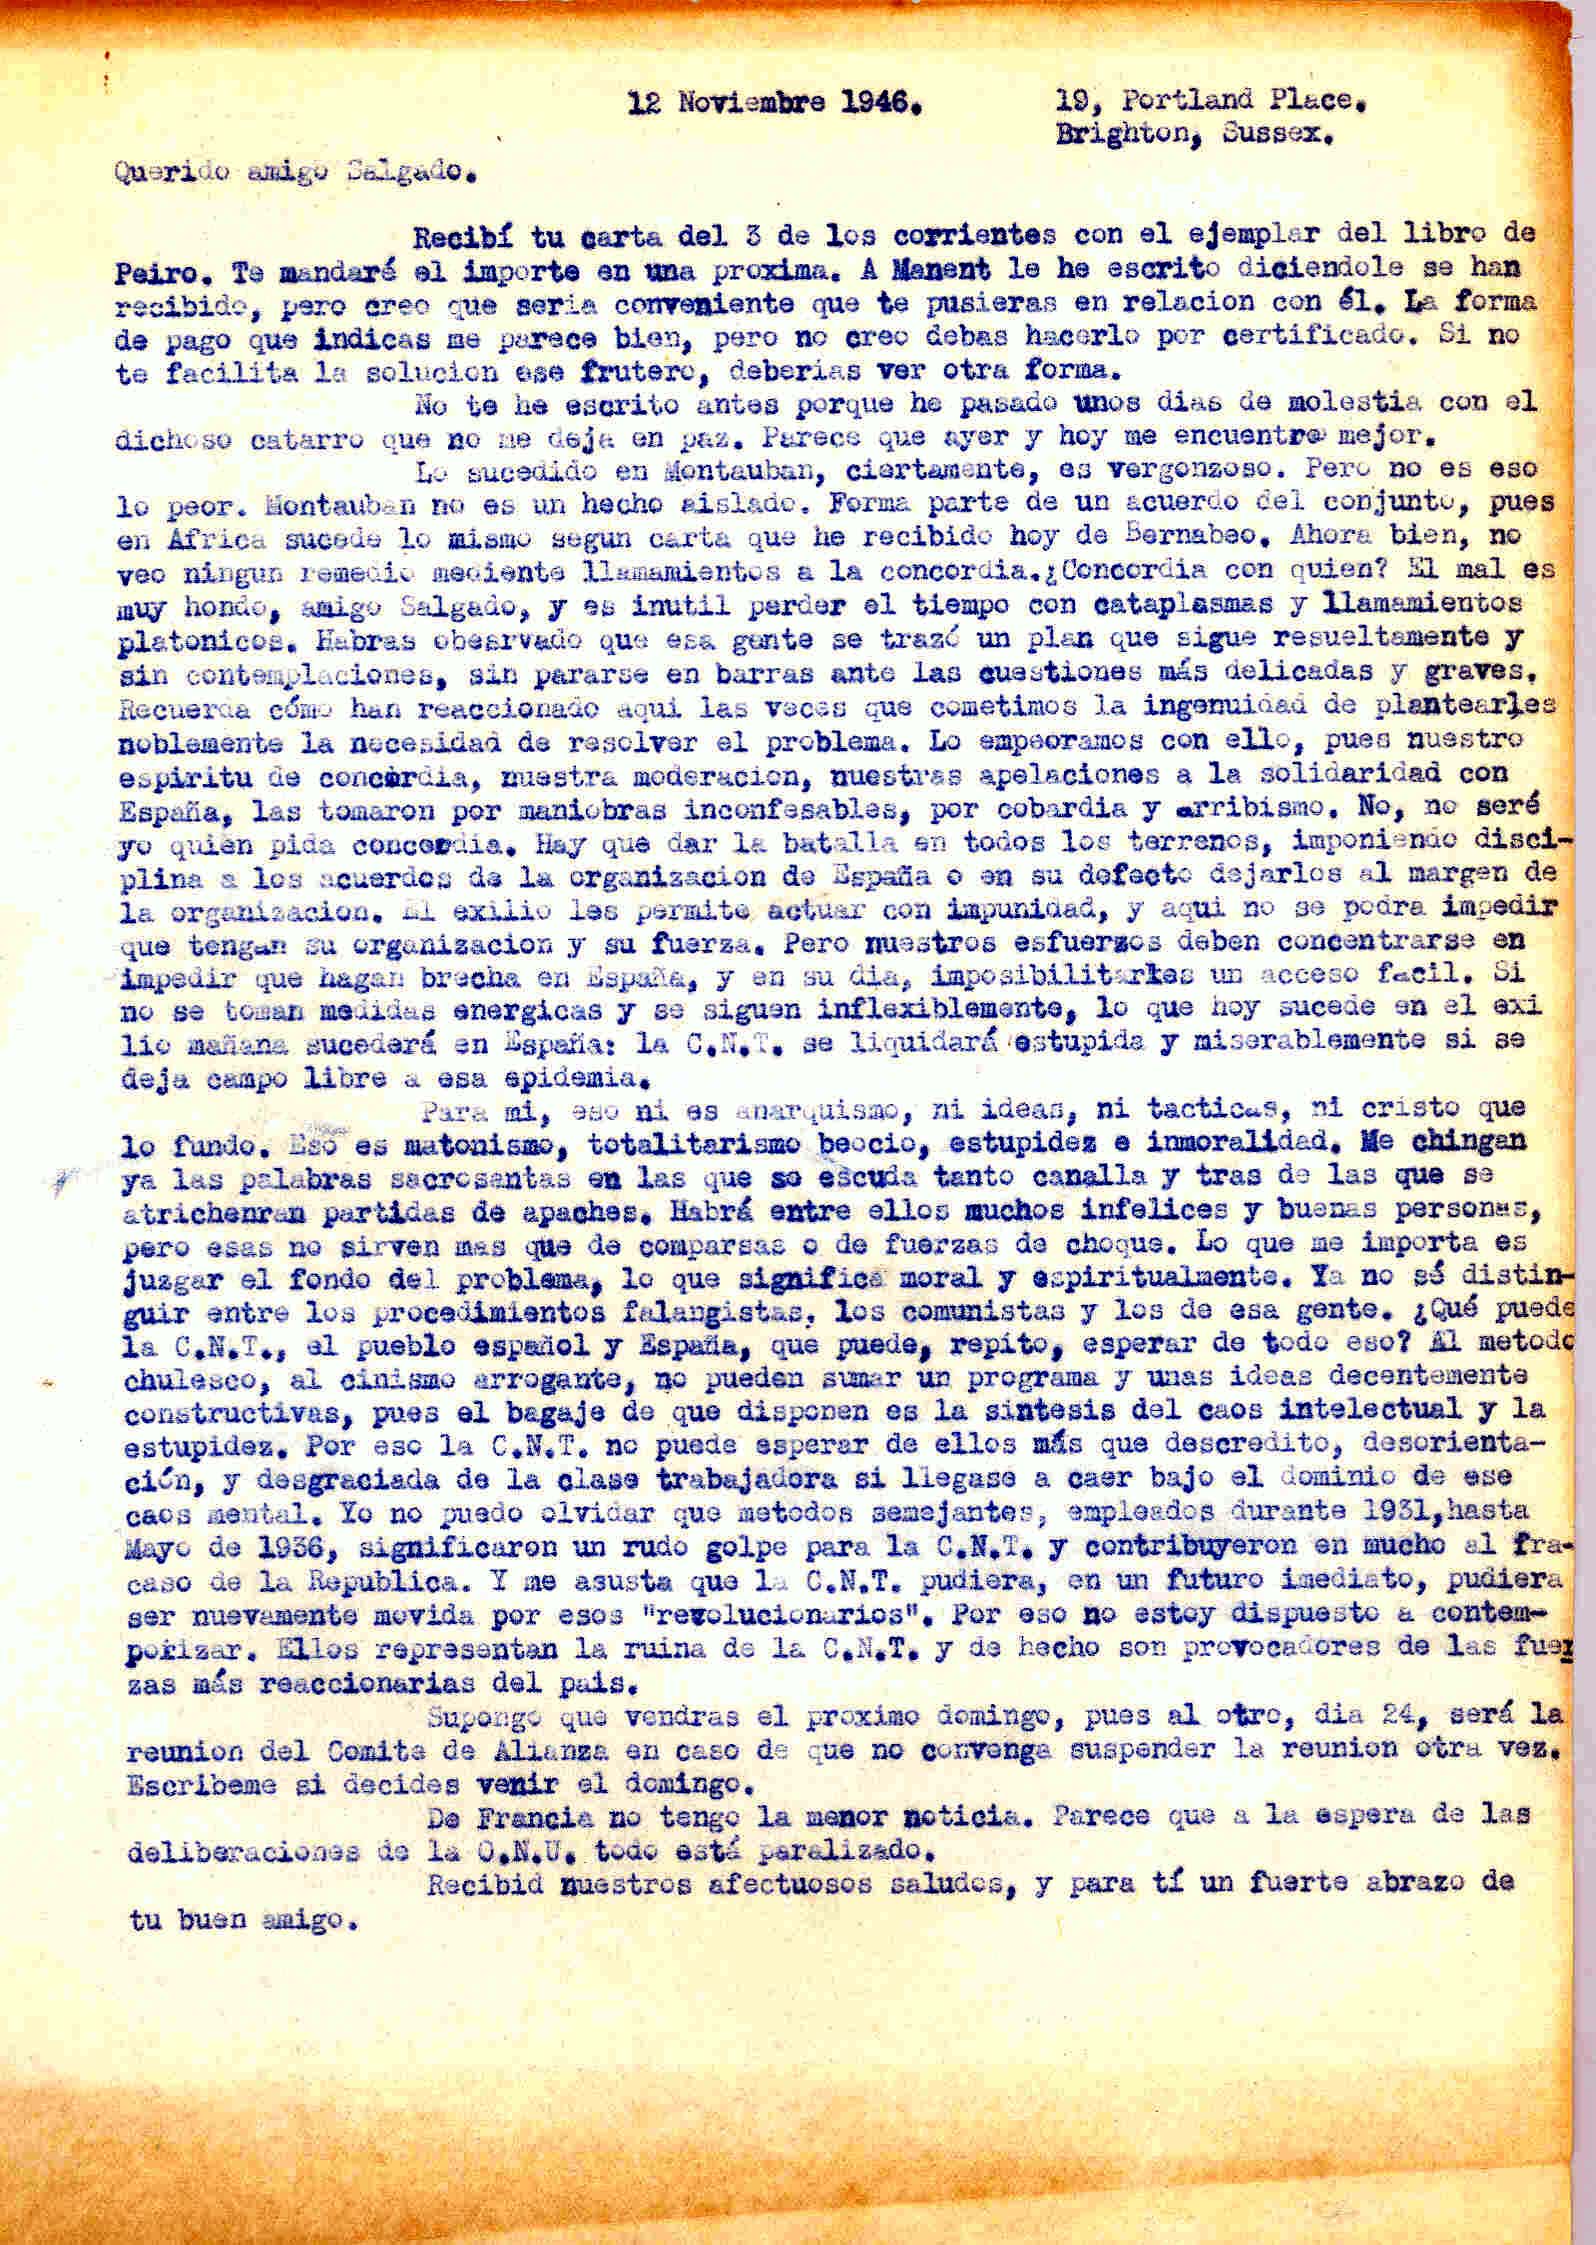 Carta a Manuel Salgado sobre lo sucedido en Montauban e informándole sobre la próxima reunión del comité de la Alianza